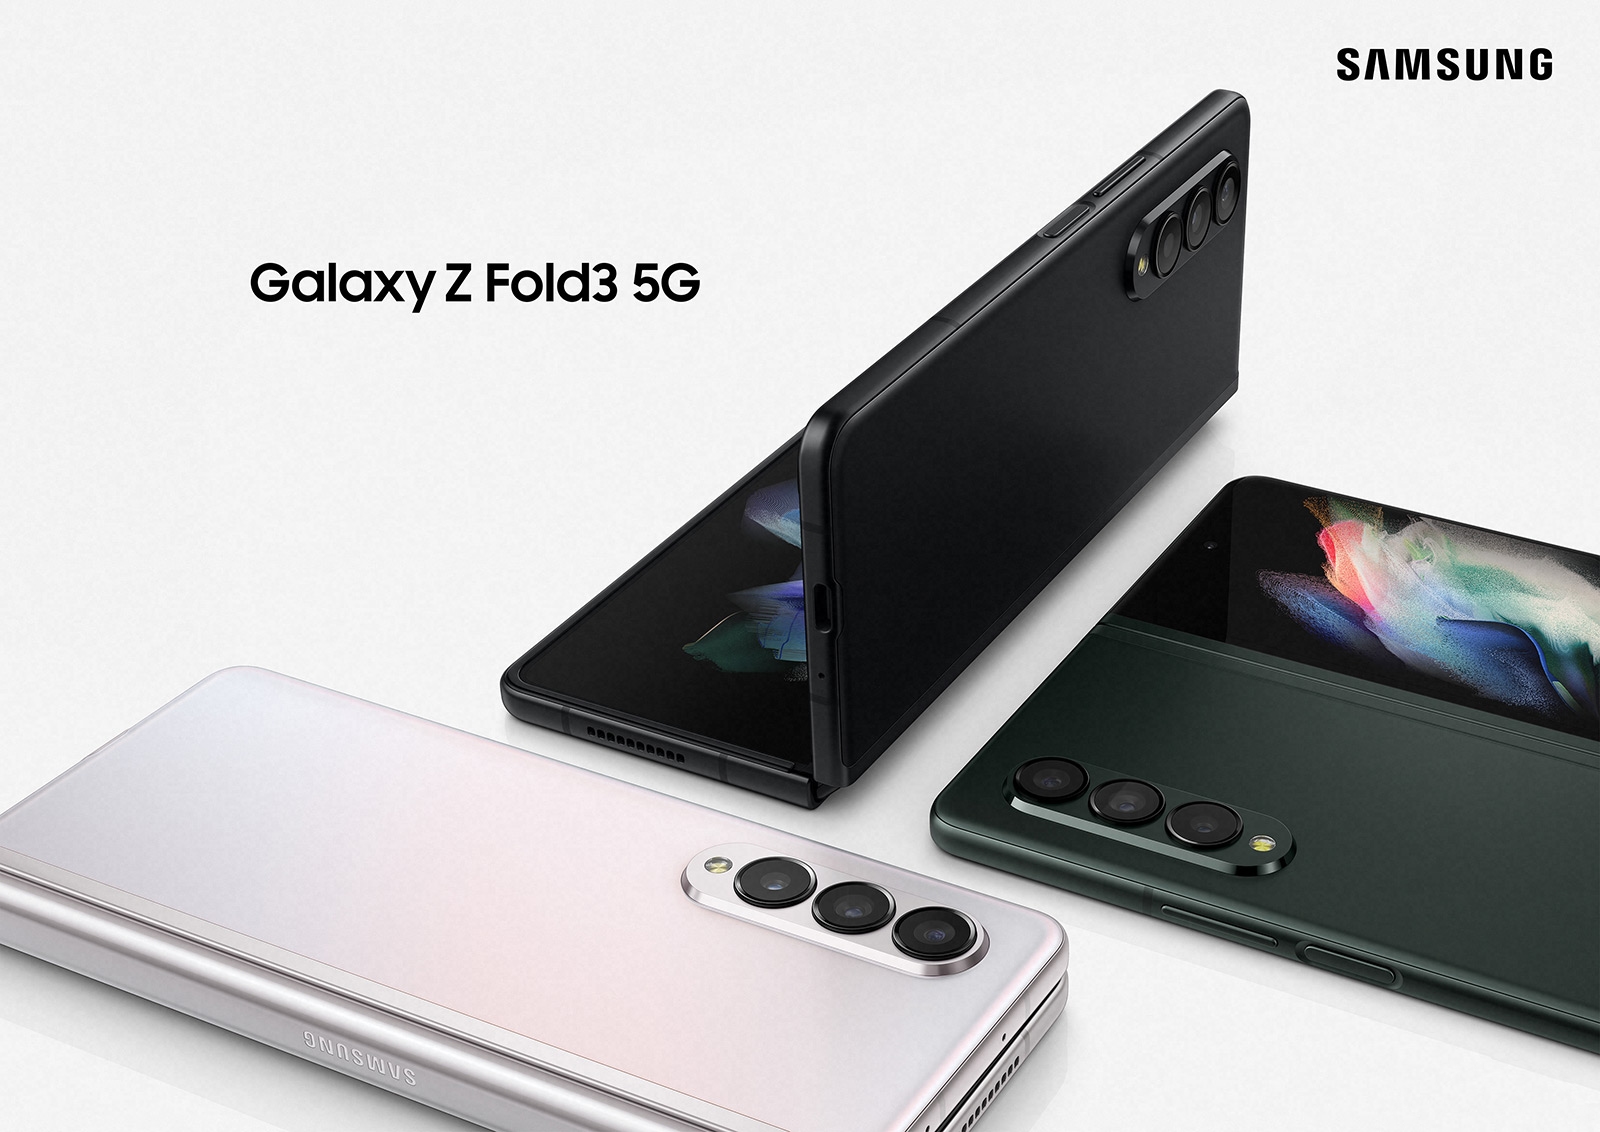 Siguiendo el Galaxy Z Flip 3: Samsung ha comenzado a actualizar el Galaxy Z Fold 3 a Android 12 con One UI 4.0